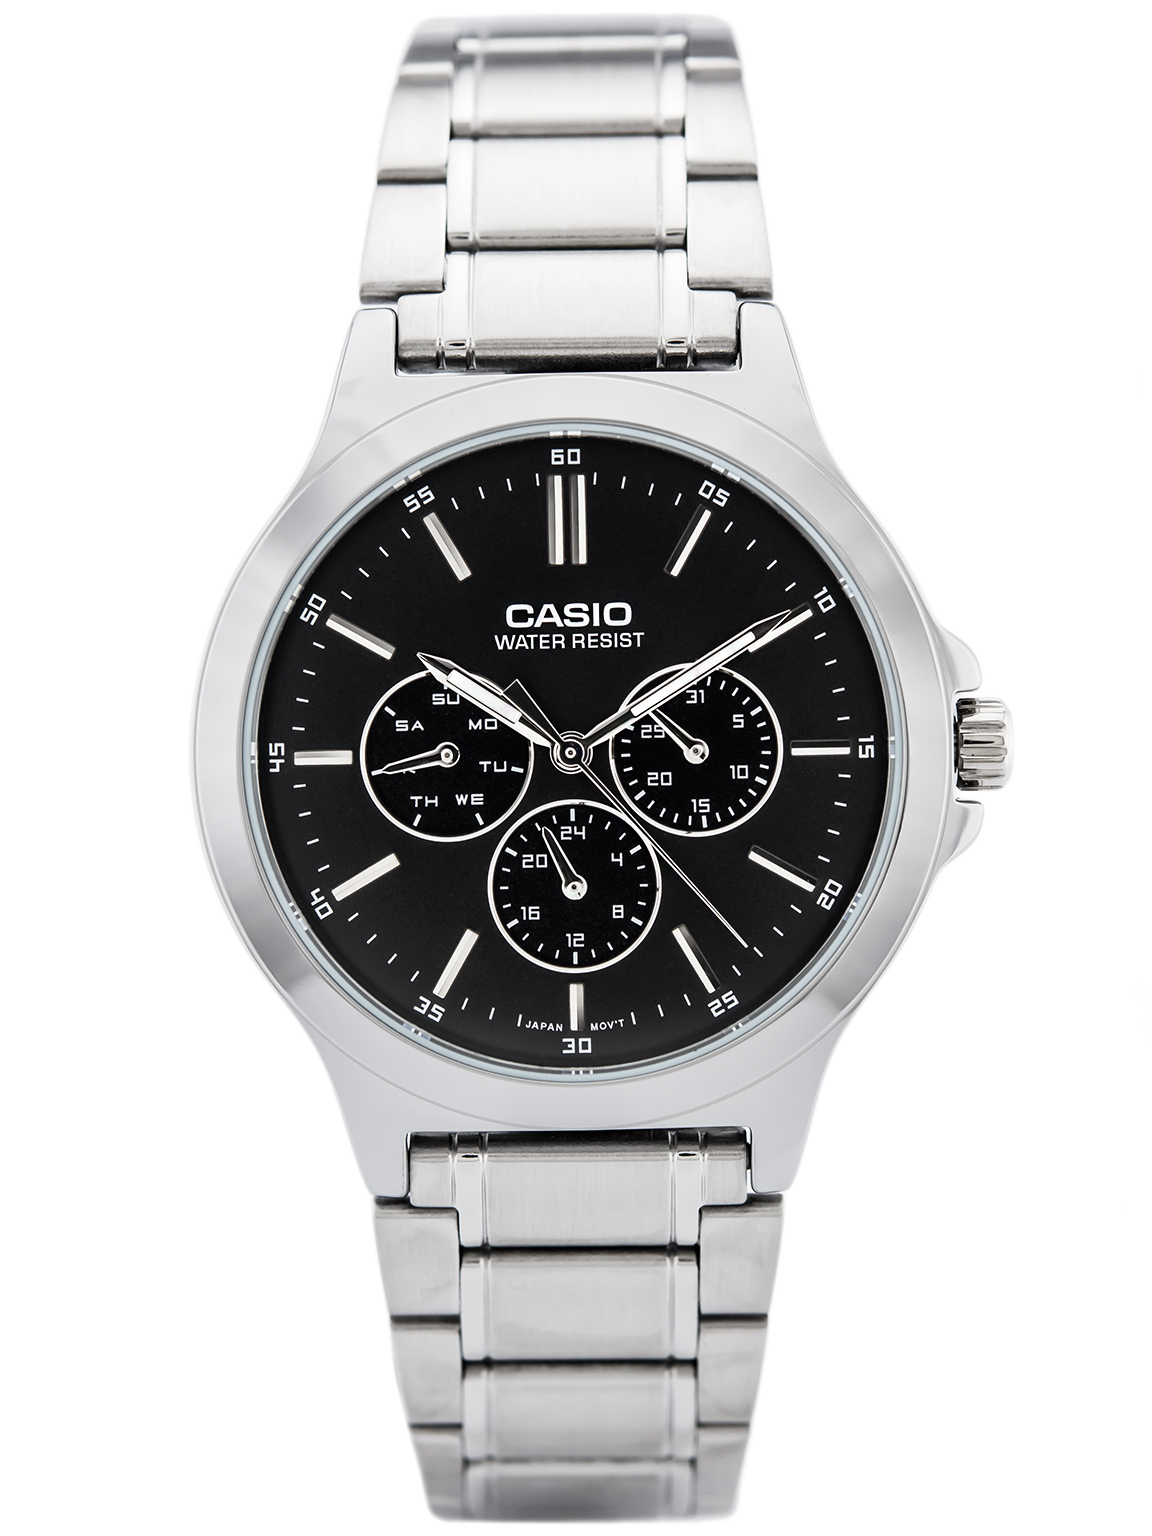 Đồng hồ nam dây kim loại Casio Standard chính hãng Anh Khuê MTP-V300D-1AUDF (41mm)